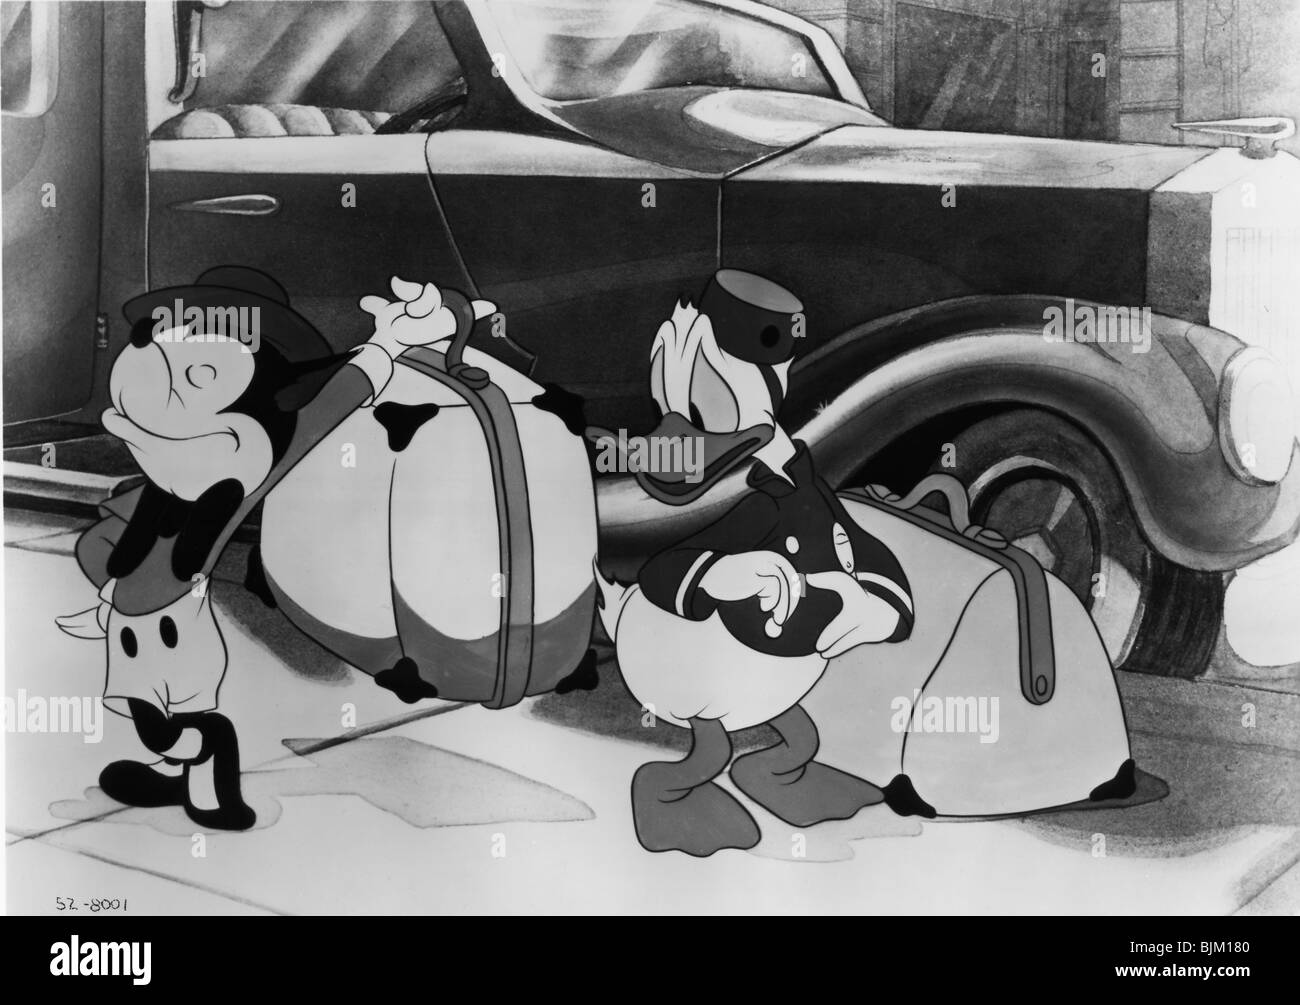 Diseño de personajes del Pato Donald · Creative Fabrica